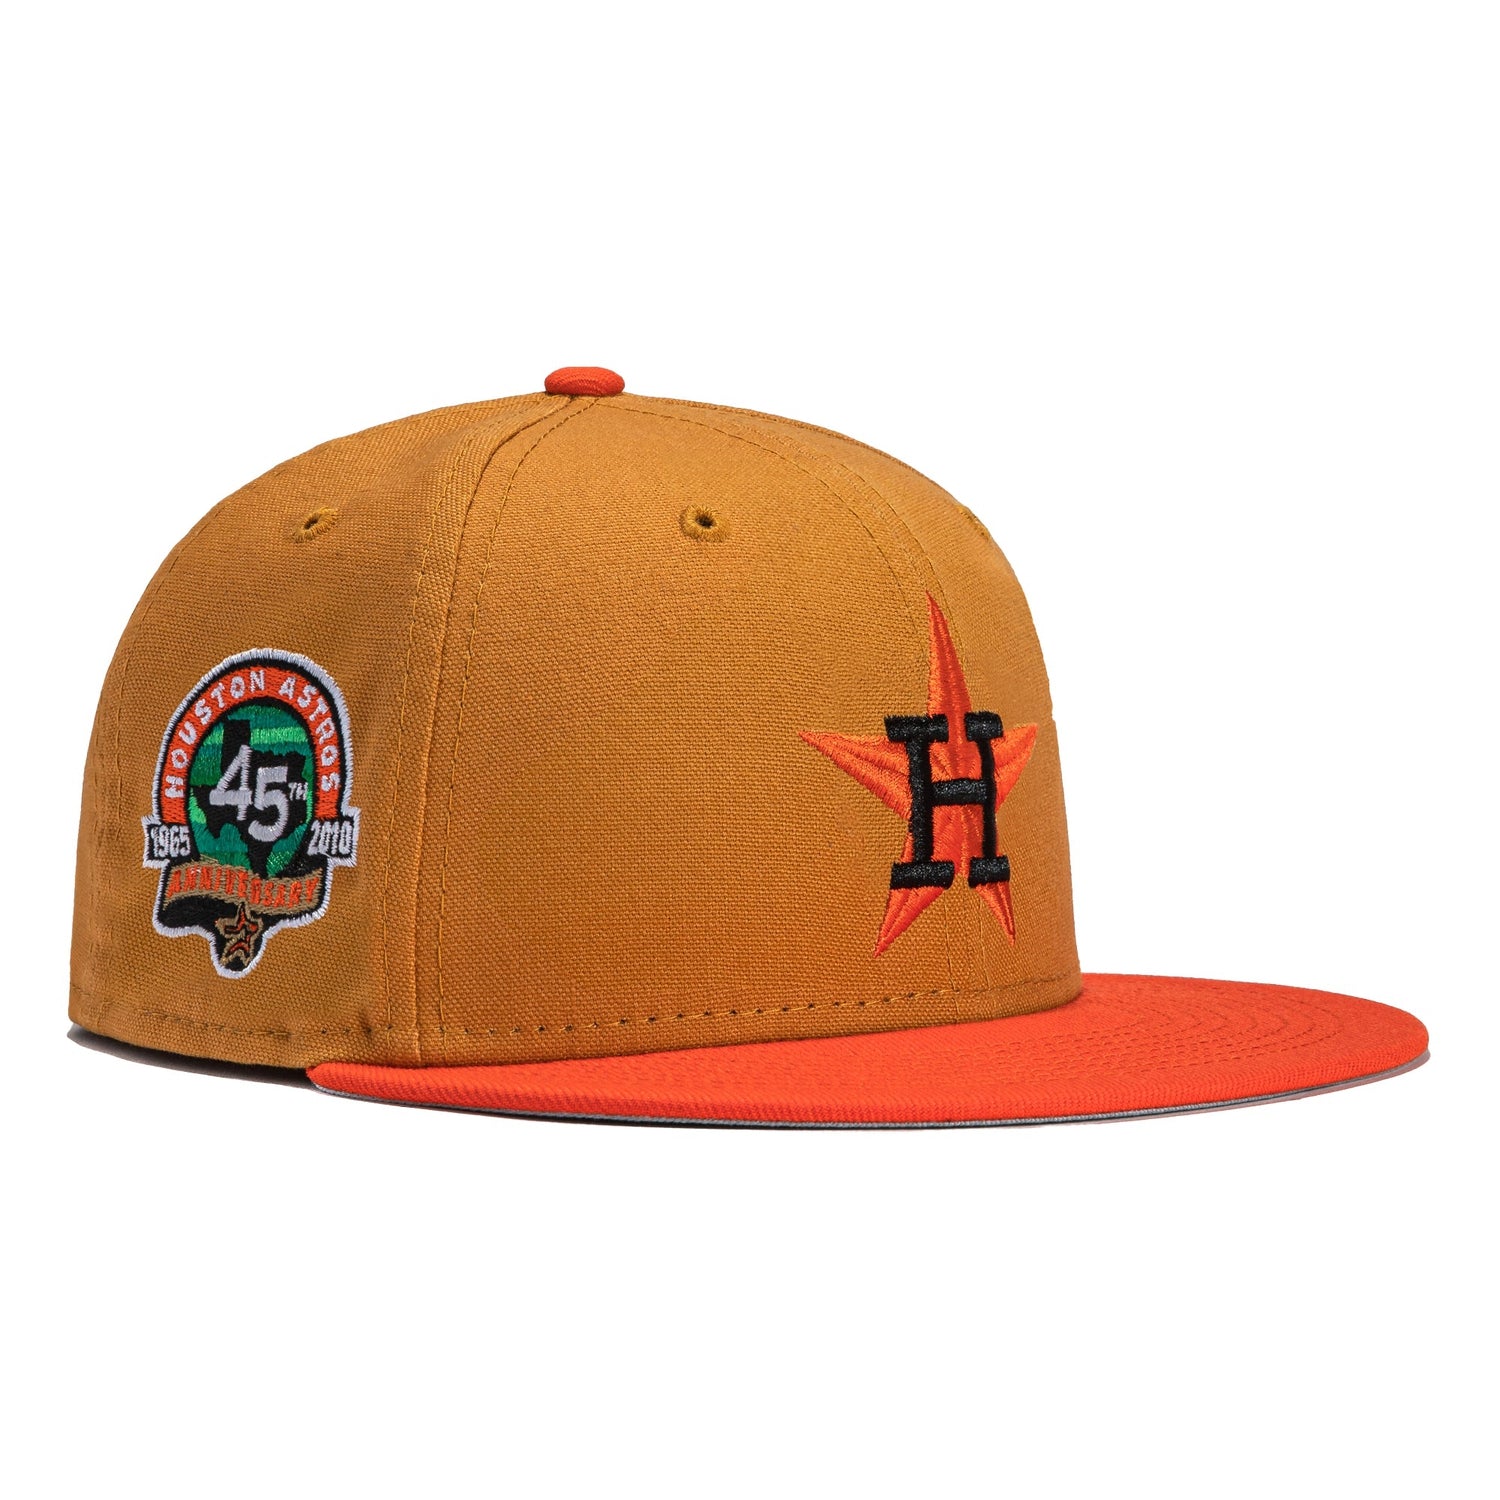 New Era 59FIFTY Turkey Bowl Houston Astros 45th Anniversary Patch Hat - Khaki, Orange Khaki/Orange / 7 3/4